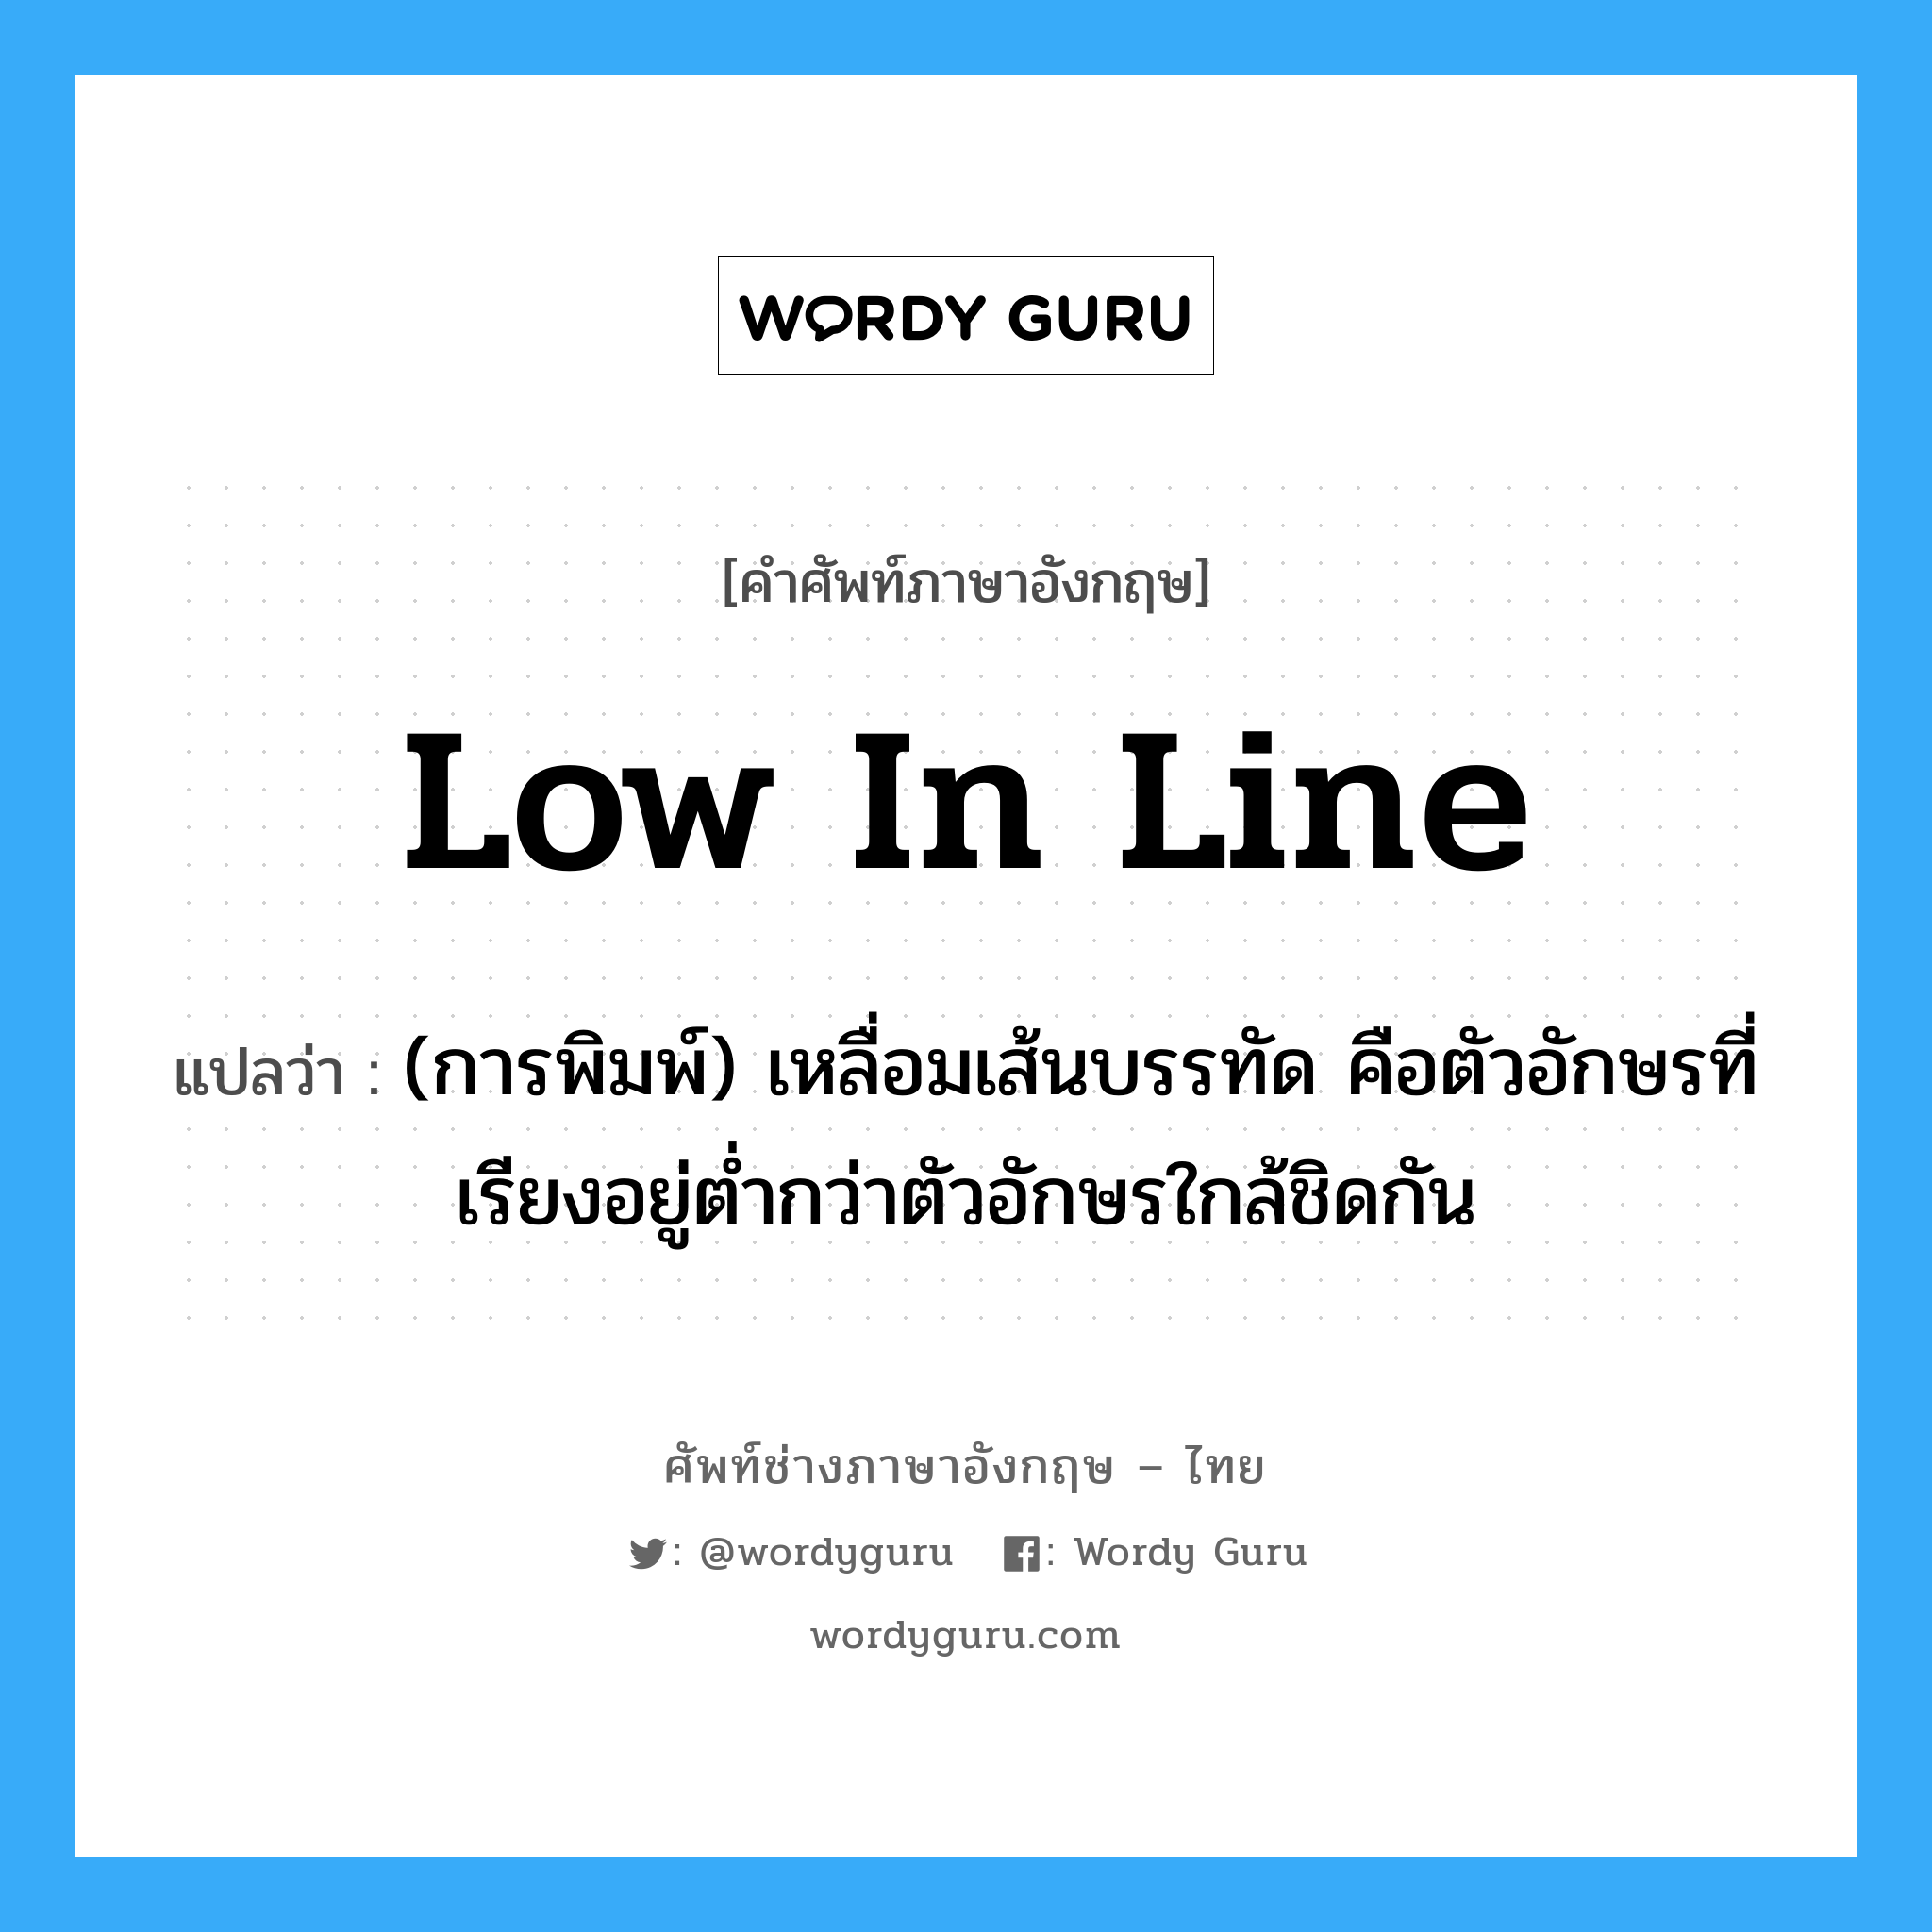 low in line แปลว่า?, คำศัพท์ช่างภาษาอังกฤษ - ไทย low in line คำศัพท์ภาษาอังกฤษ low in line แปลว่า (การพิมพ์) เหลื่อมเส้นบรรทัด คือตัวอักษรที่เรียงอยู่ต่ำกว่าตัวอักษรใกล้ชิดกัน